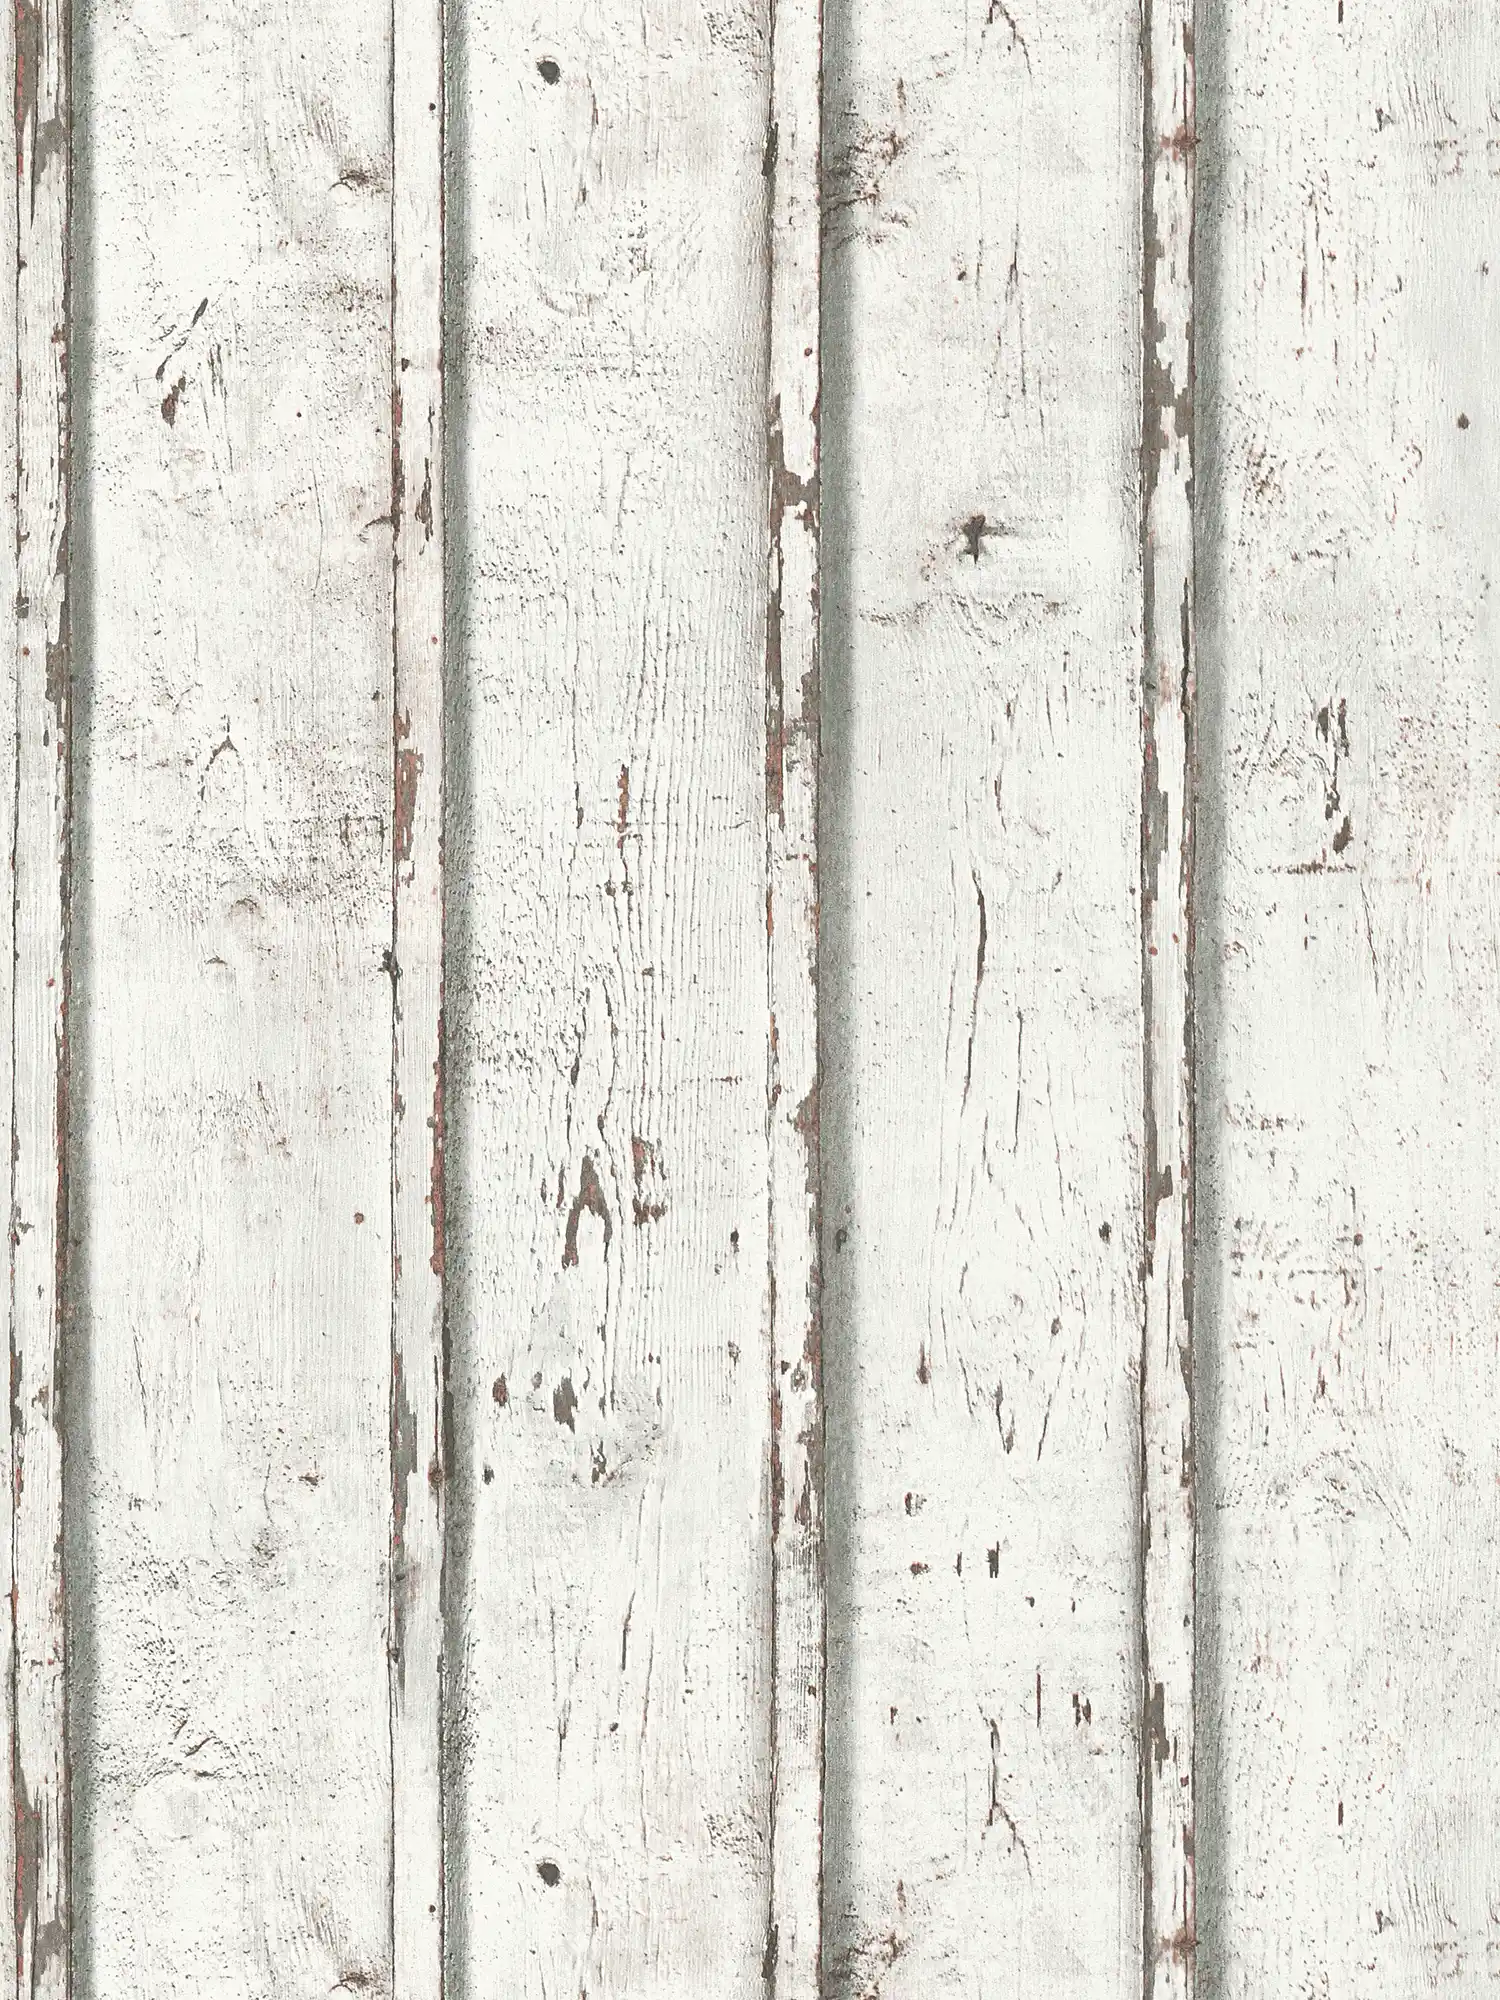 Papier peint bois aspect usé avec planches de bois érodées - blanc, crème, gris
